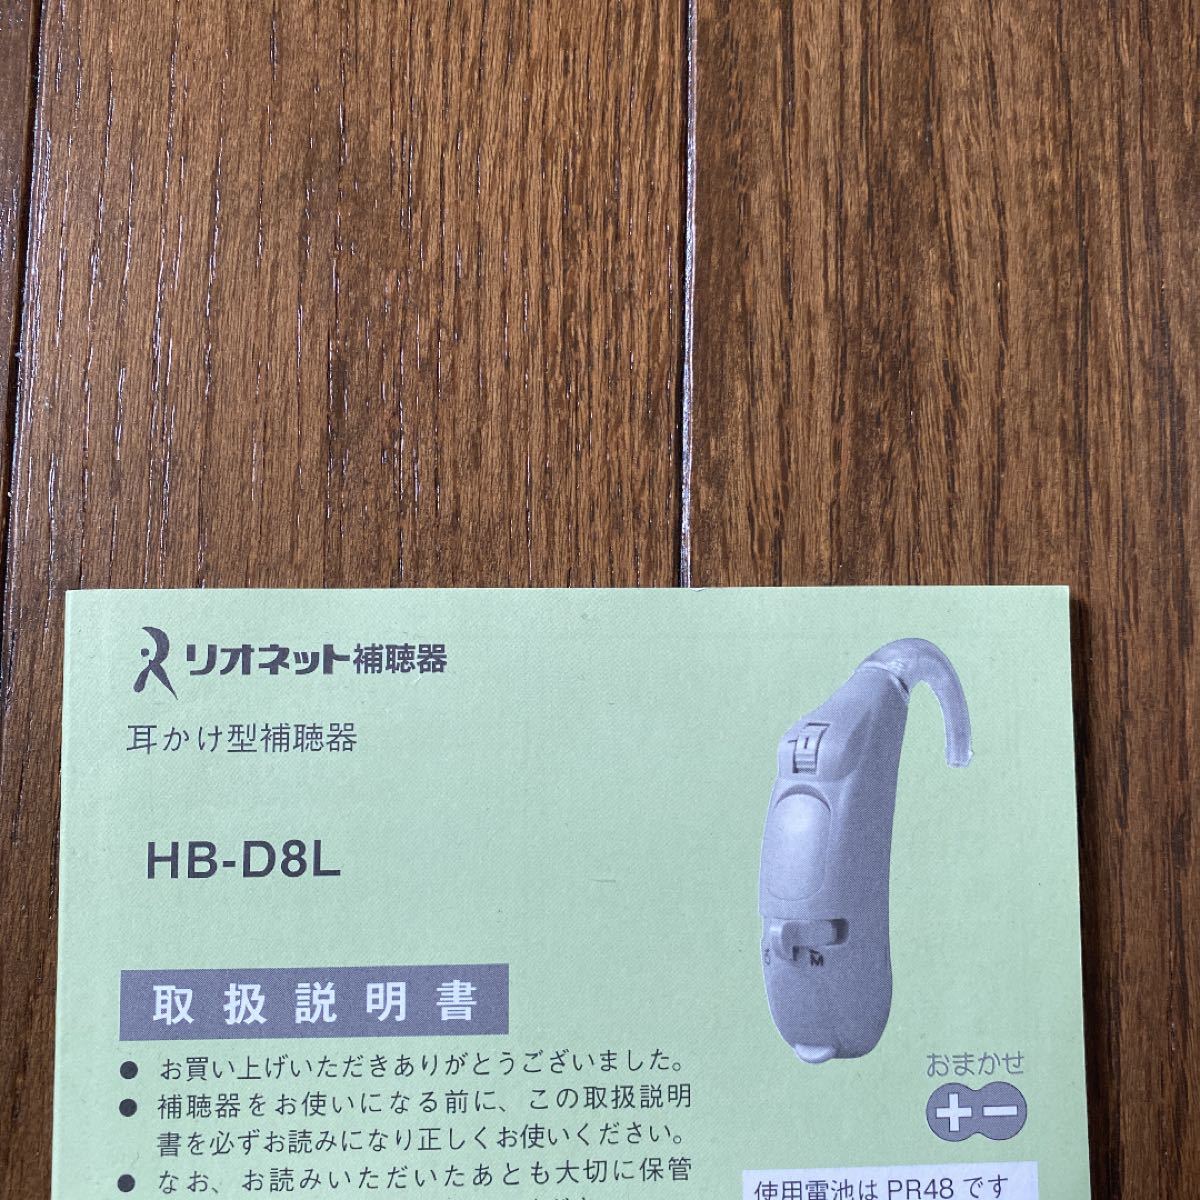 リオネット 耳かけ型補聴器 HB-D8L